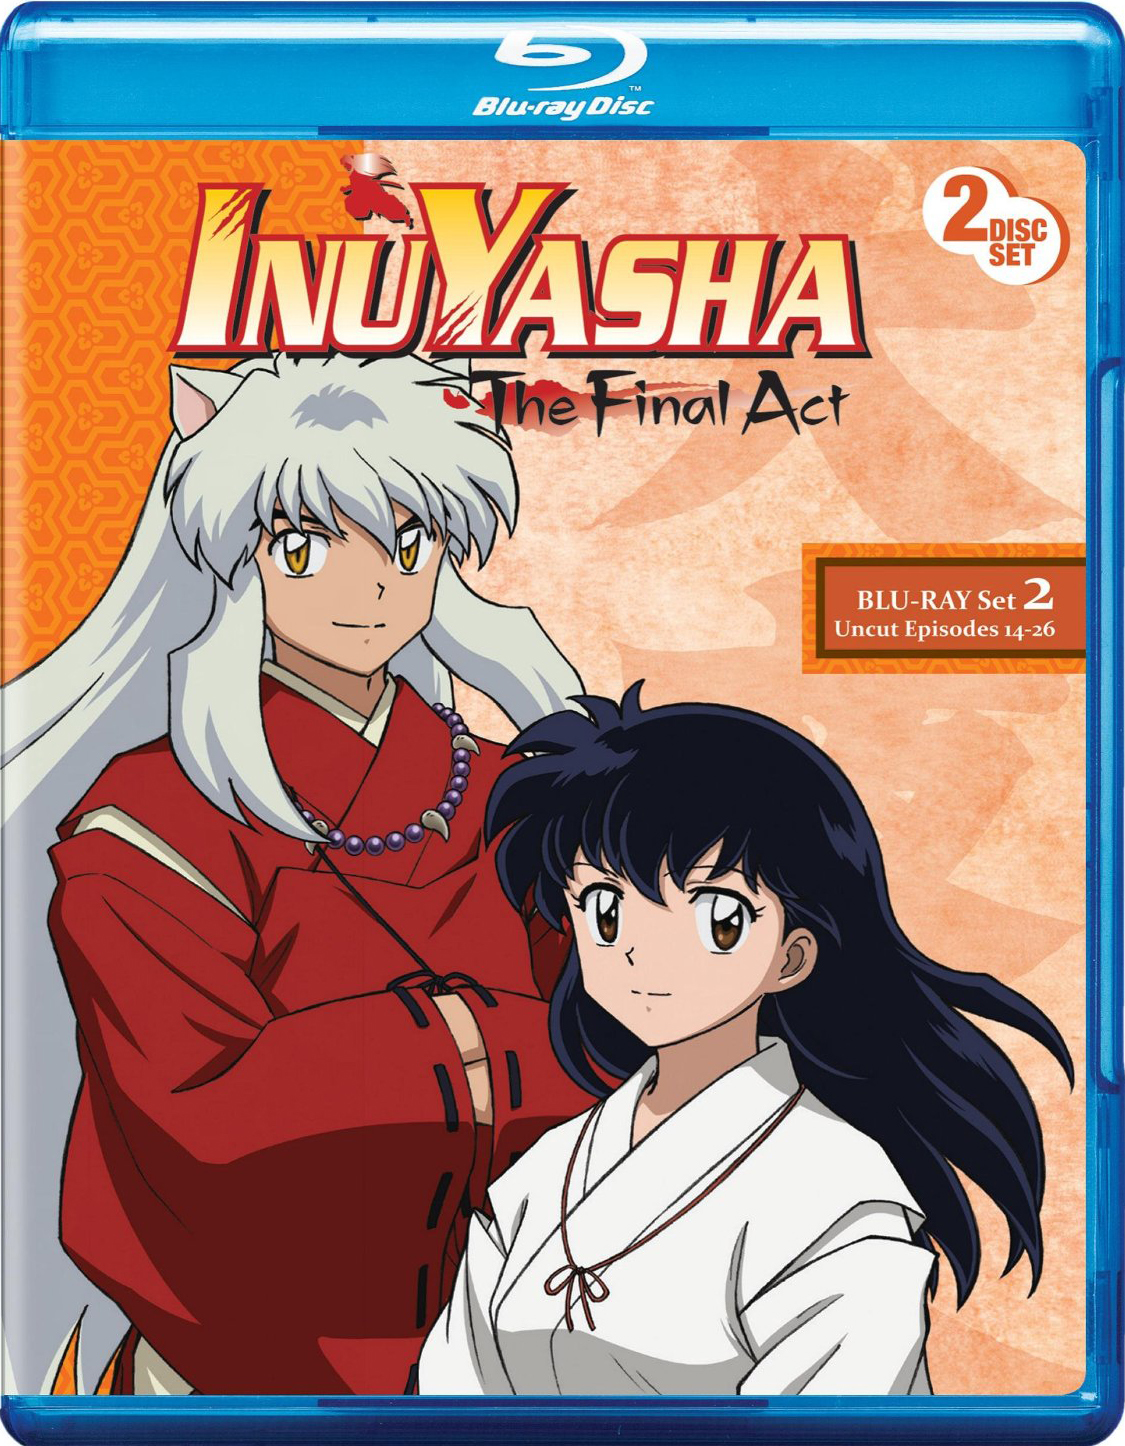 Inuyasha: The Final Act Set 2